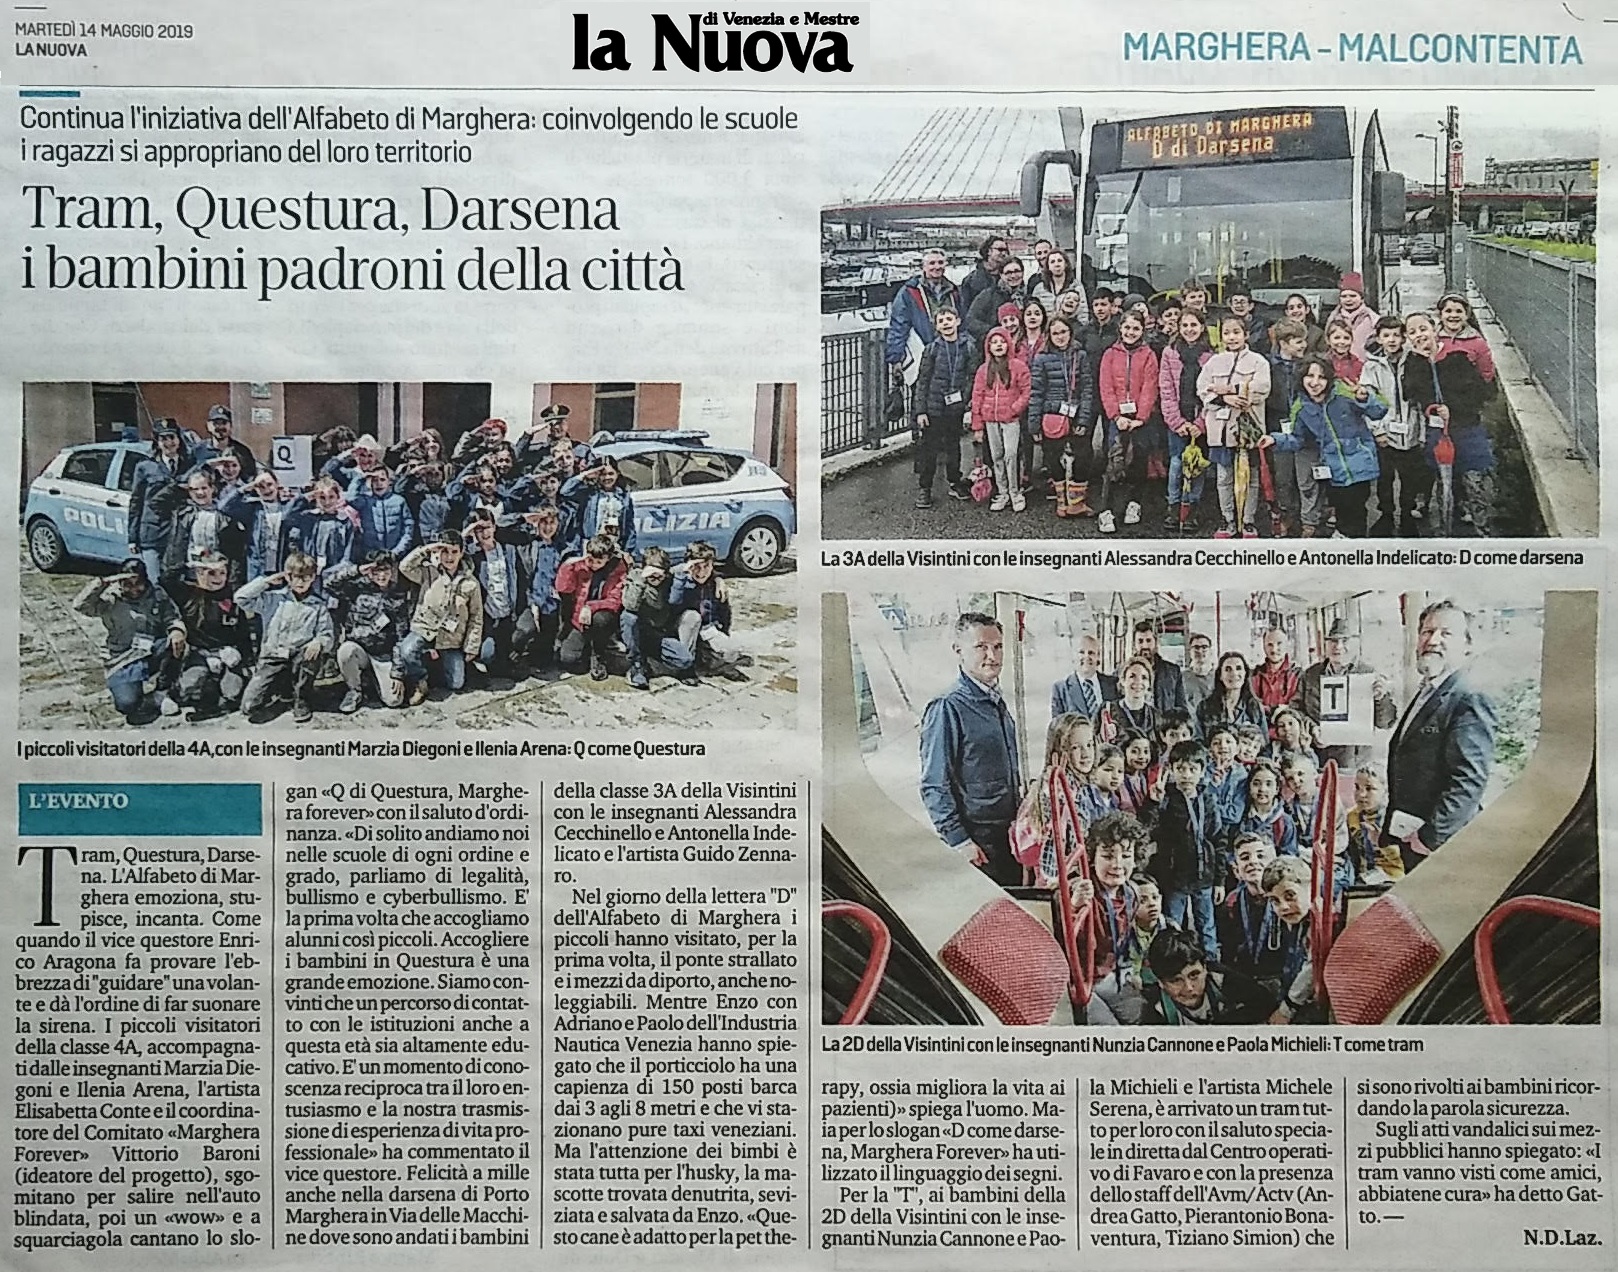 14 maggio 2019 rassegna stampa - articolo La Nuova Venezia - Alfabeto di Marghera forever per lo Sviluppo Sostenibile 2019